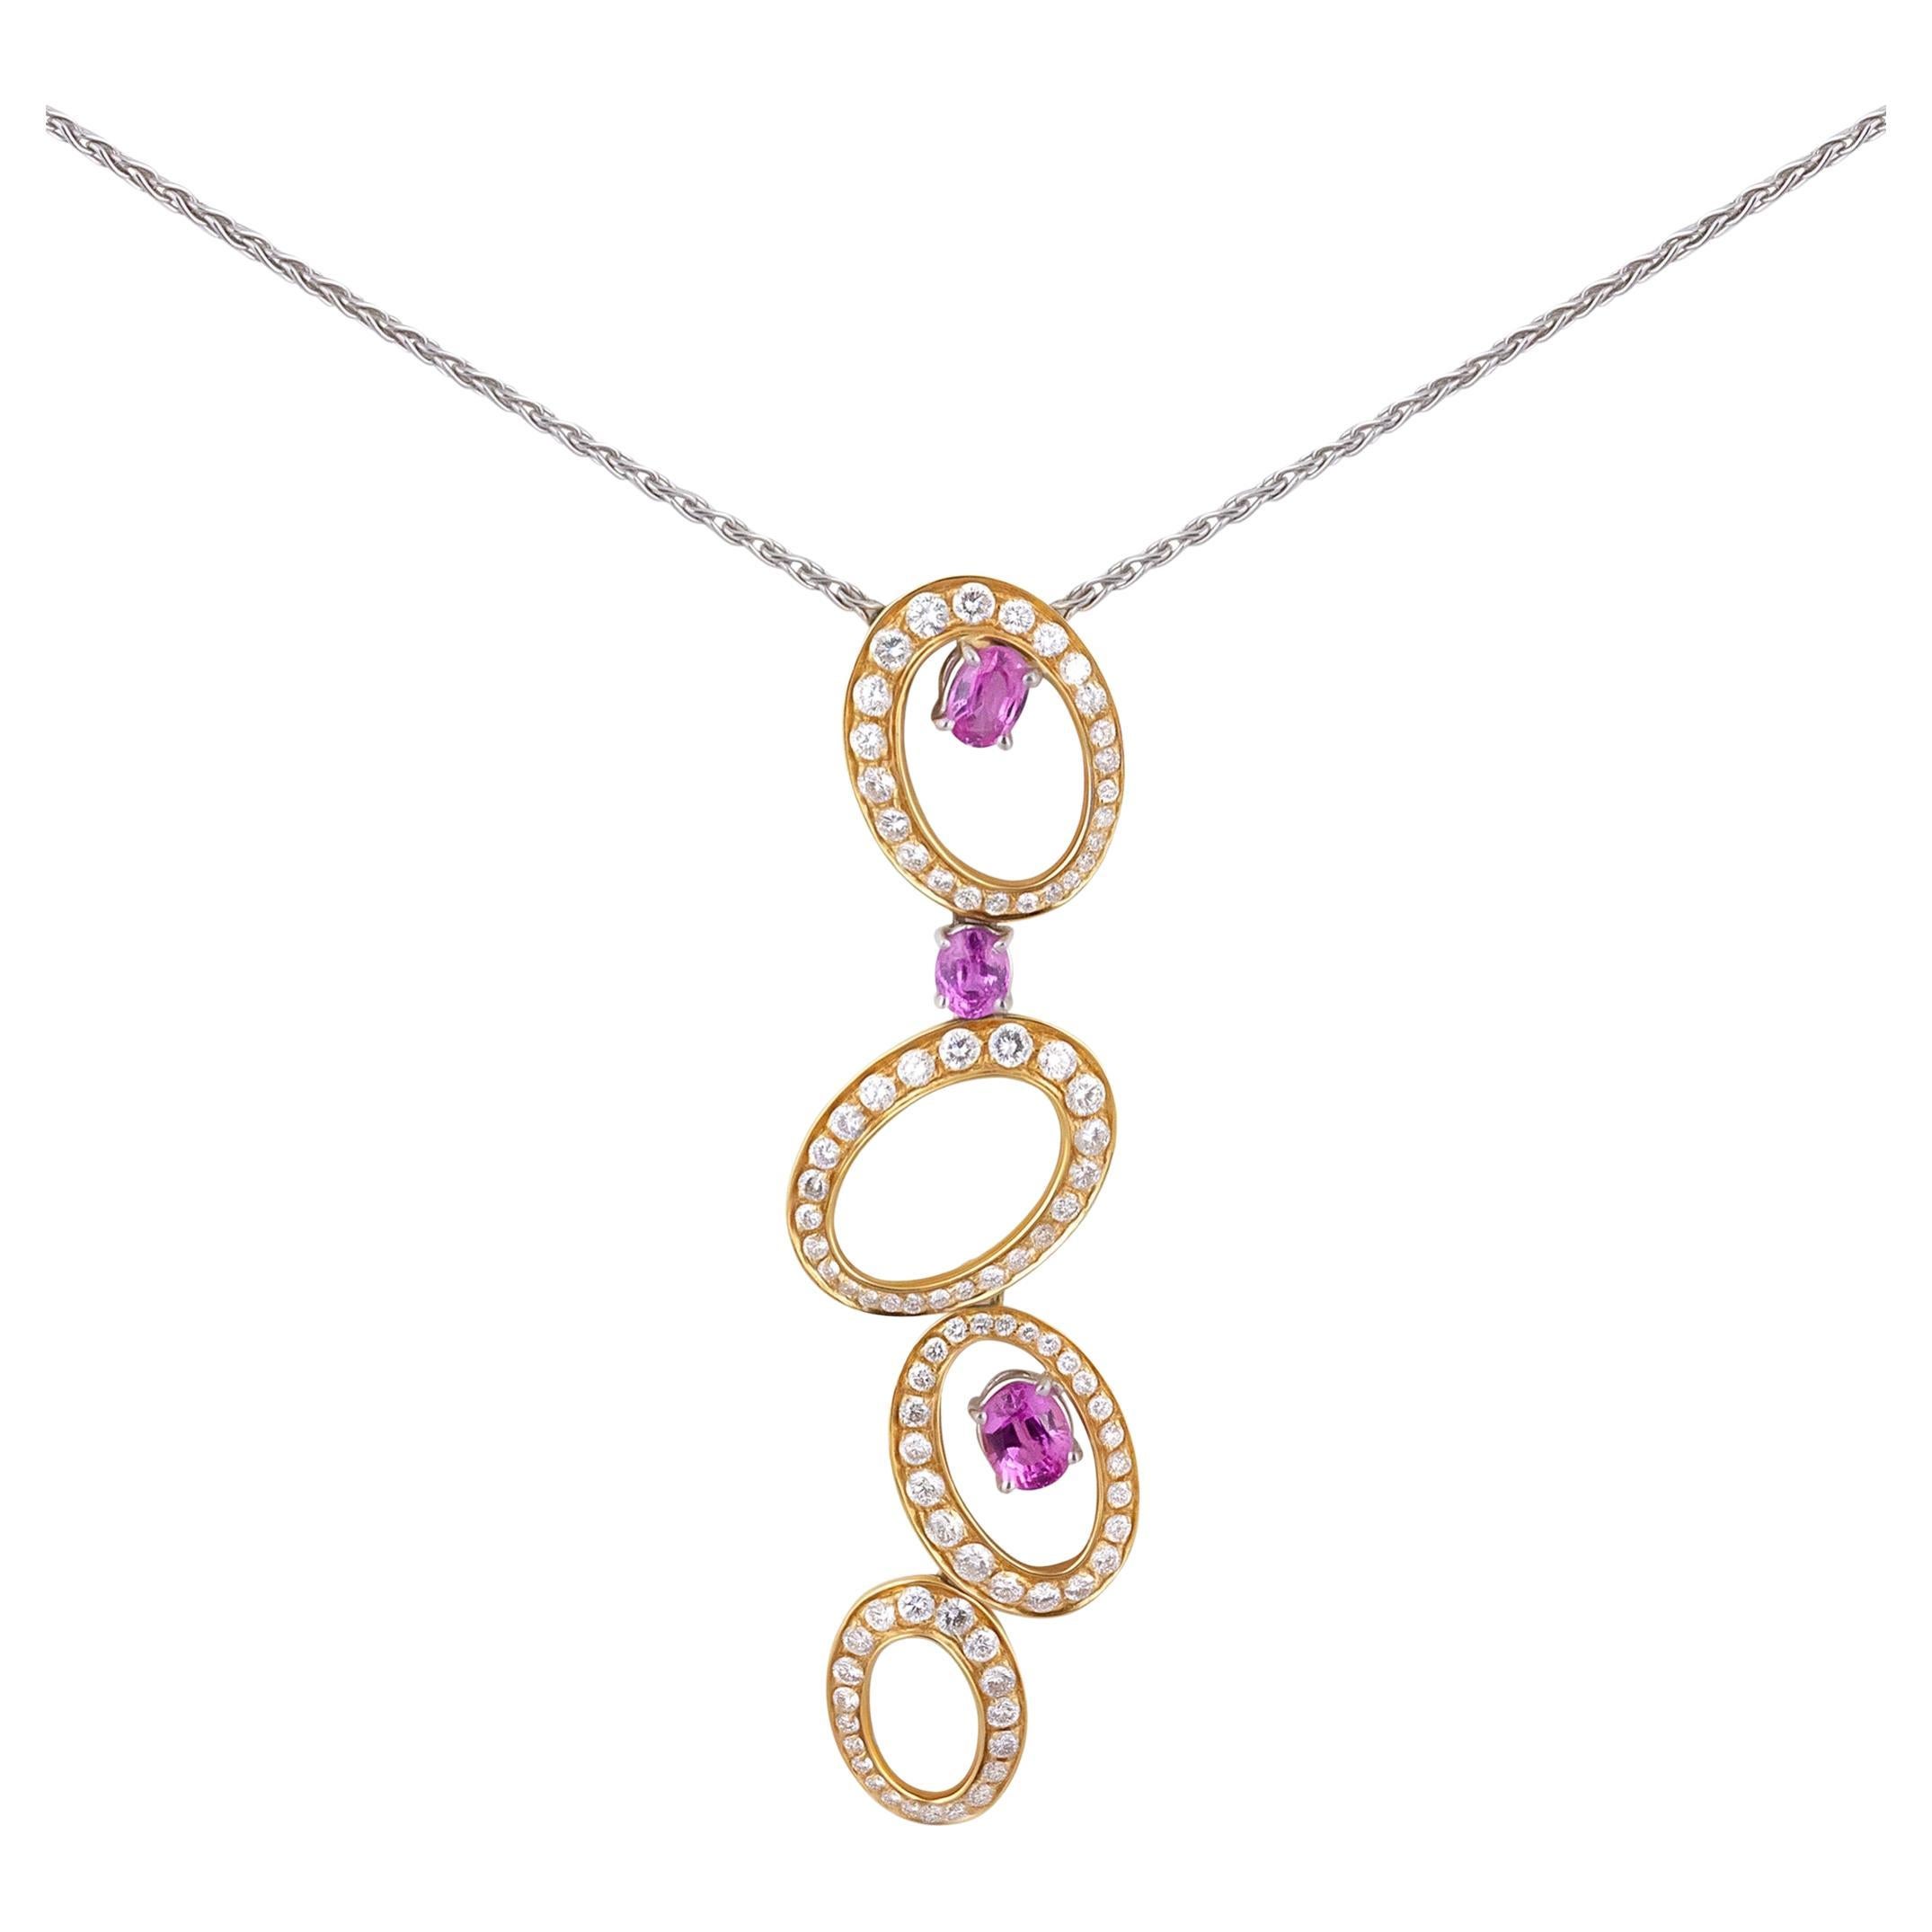 IO SI 18K White & Yellow Gold Diamond & Sapphire Necklace